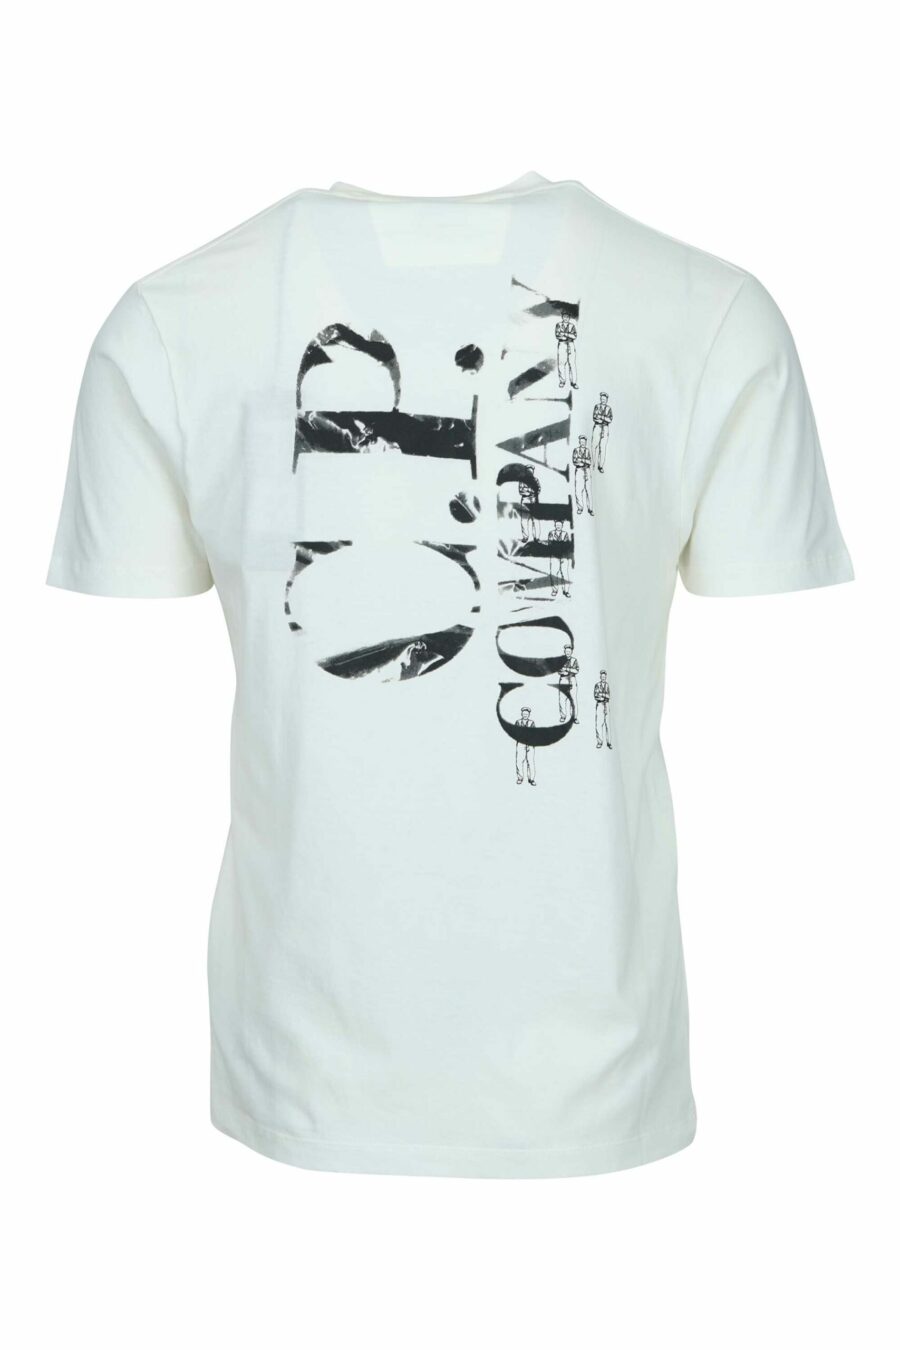 Weißes T-Shirt mit Minilog "cp" mit zentrierten Matrosen - 7620943764369 1 skaliert